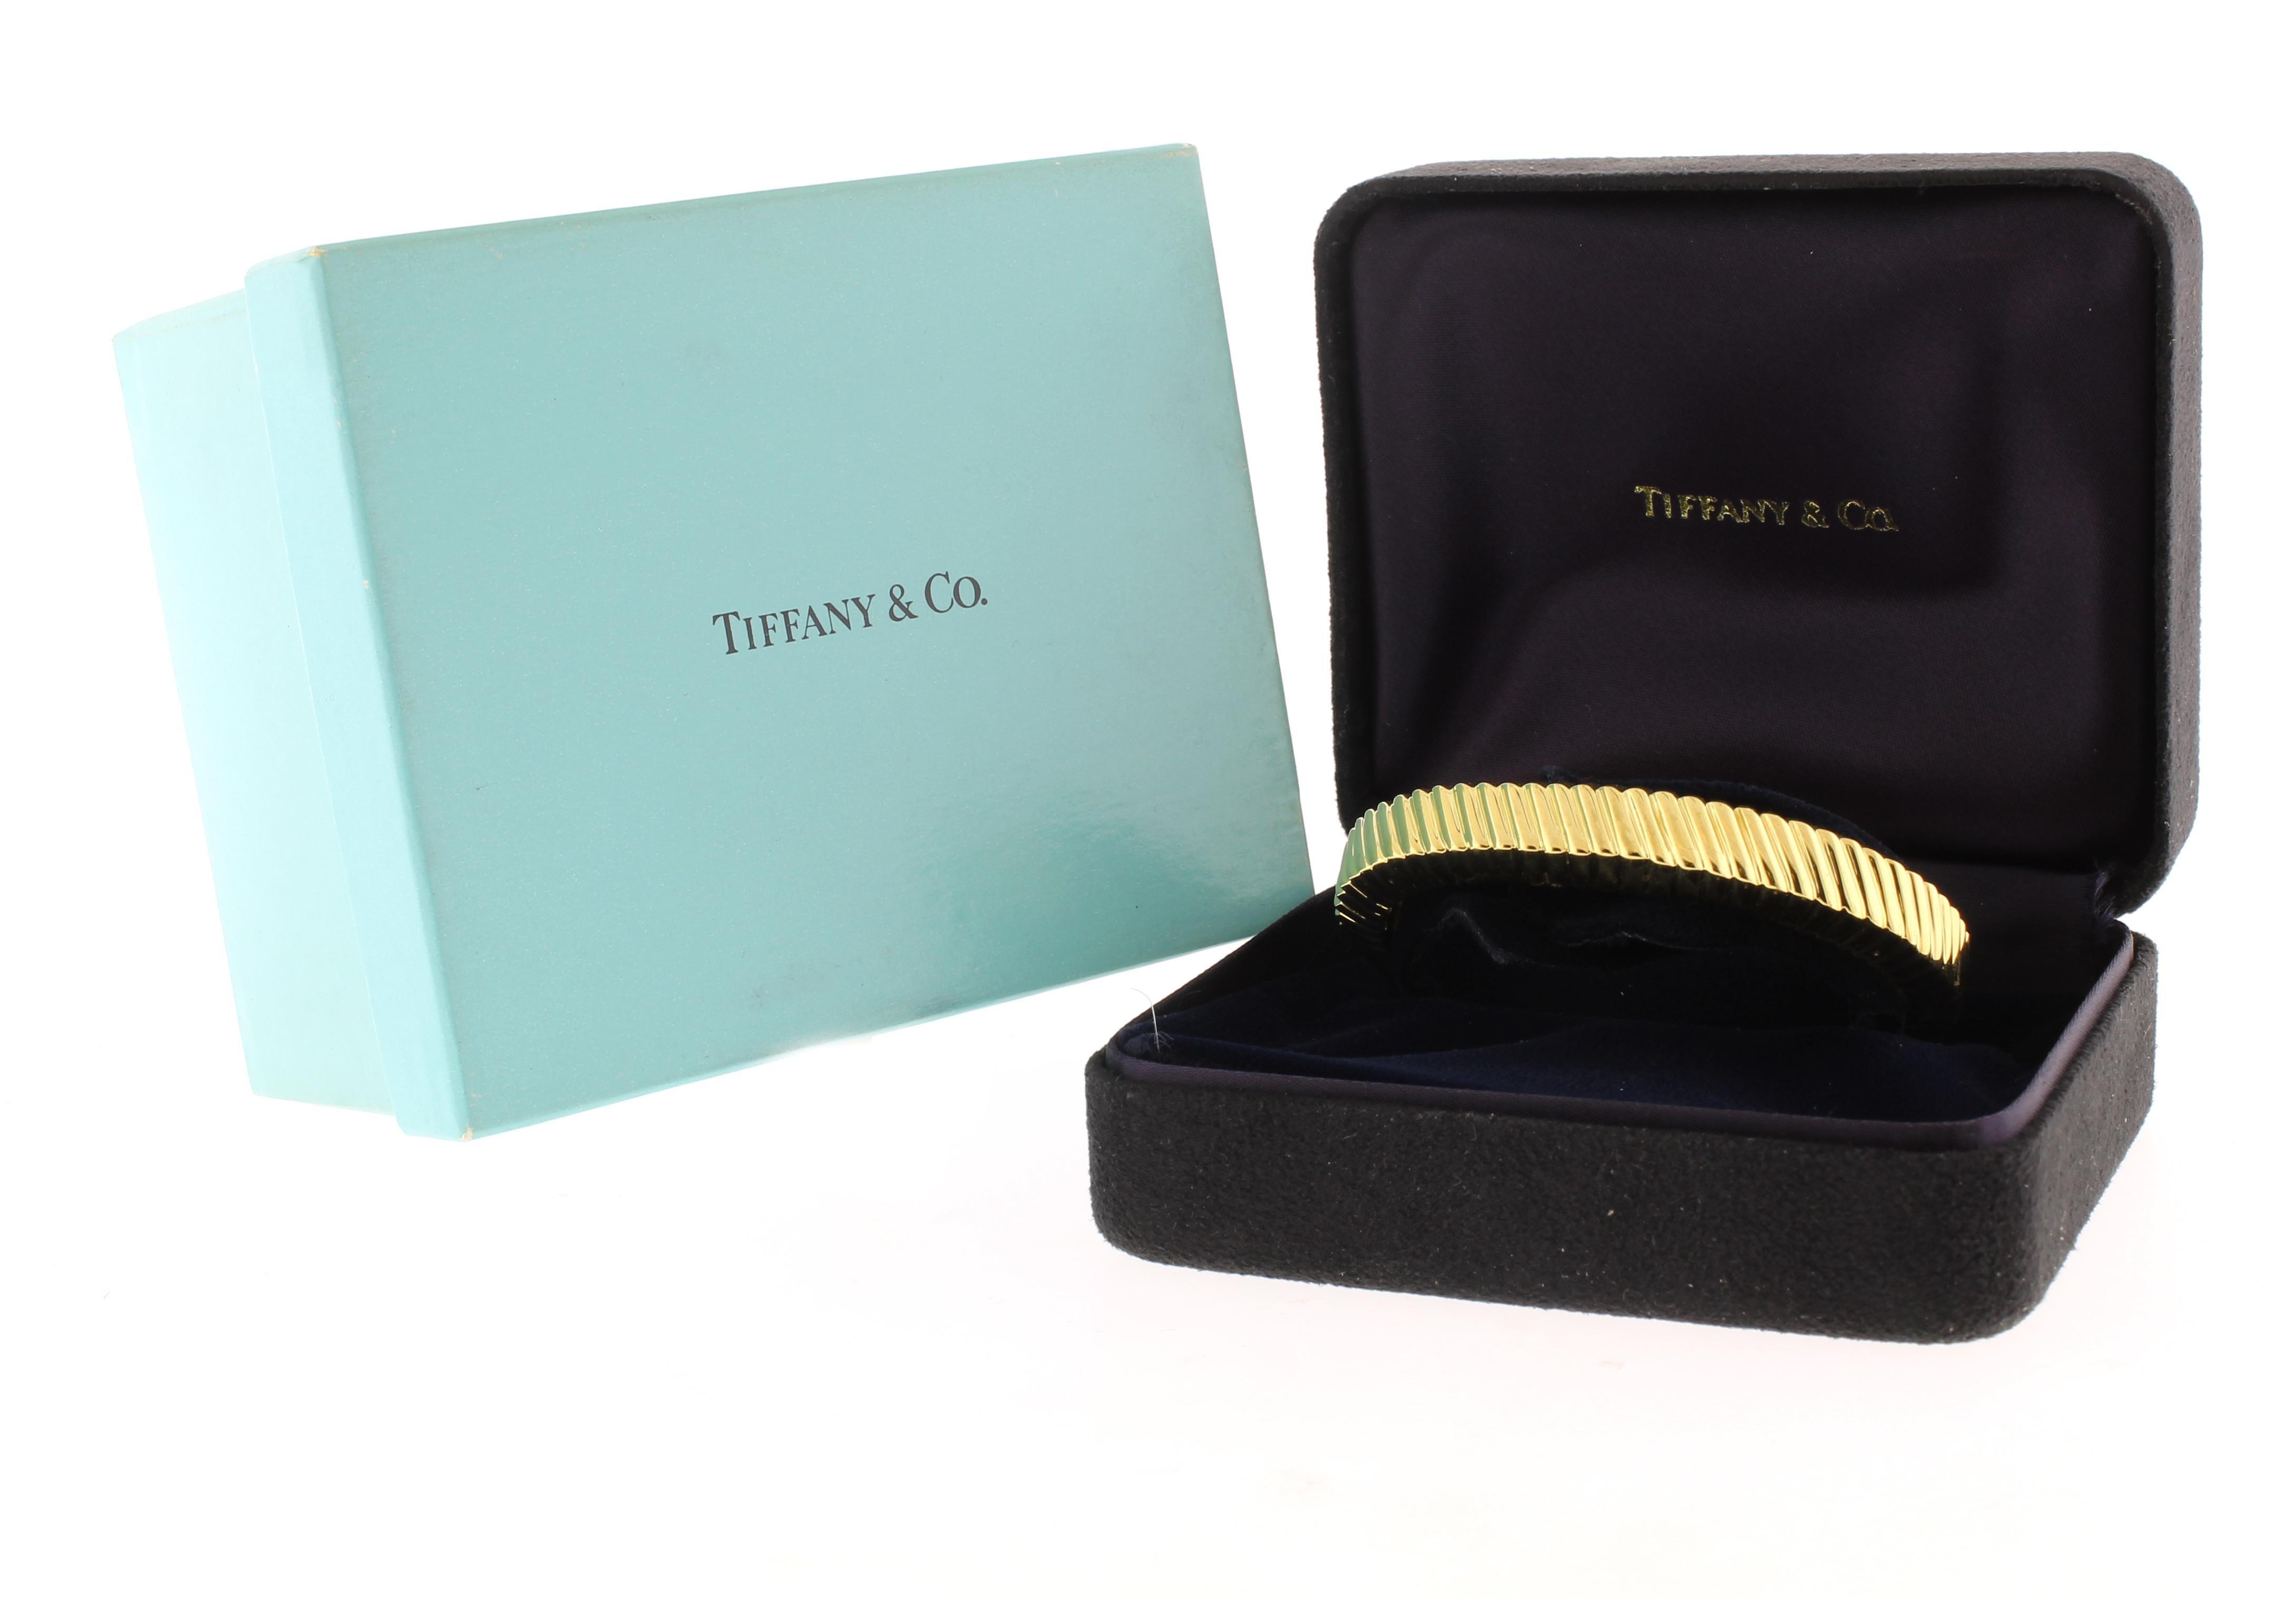 Ce bracelet manchette réalisé par Tiffany & Co. est estampillé 1998 comme année de fabrication.
♦ Designer : Tiffany & Co.
Métal : or jaune 18 carats
CIRCA : 1998
Diamètre intérieur : 2 1/4 pouces
Taille : convient à un poignet de 6 à 6 1/4 pouces
♦